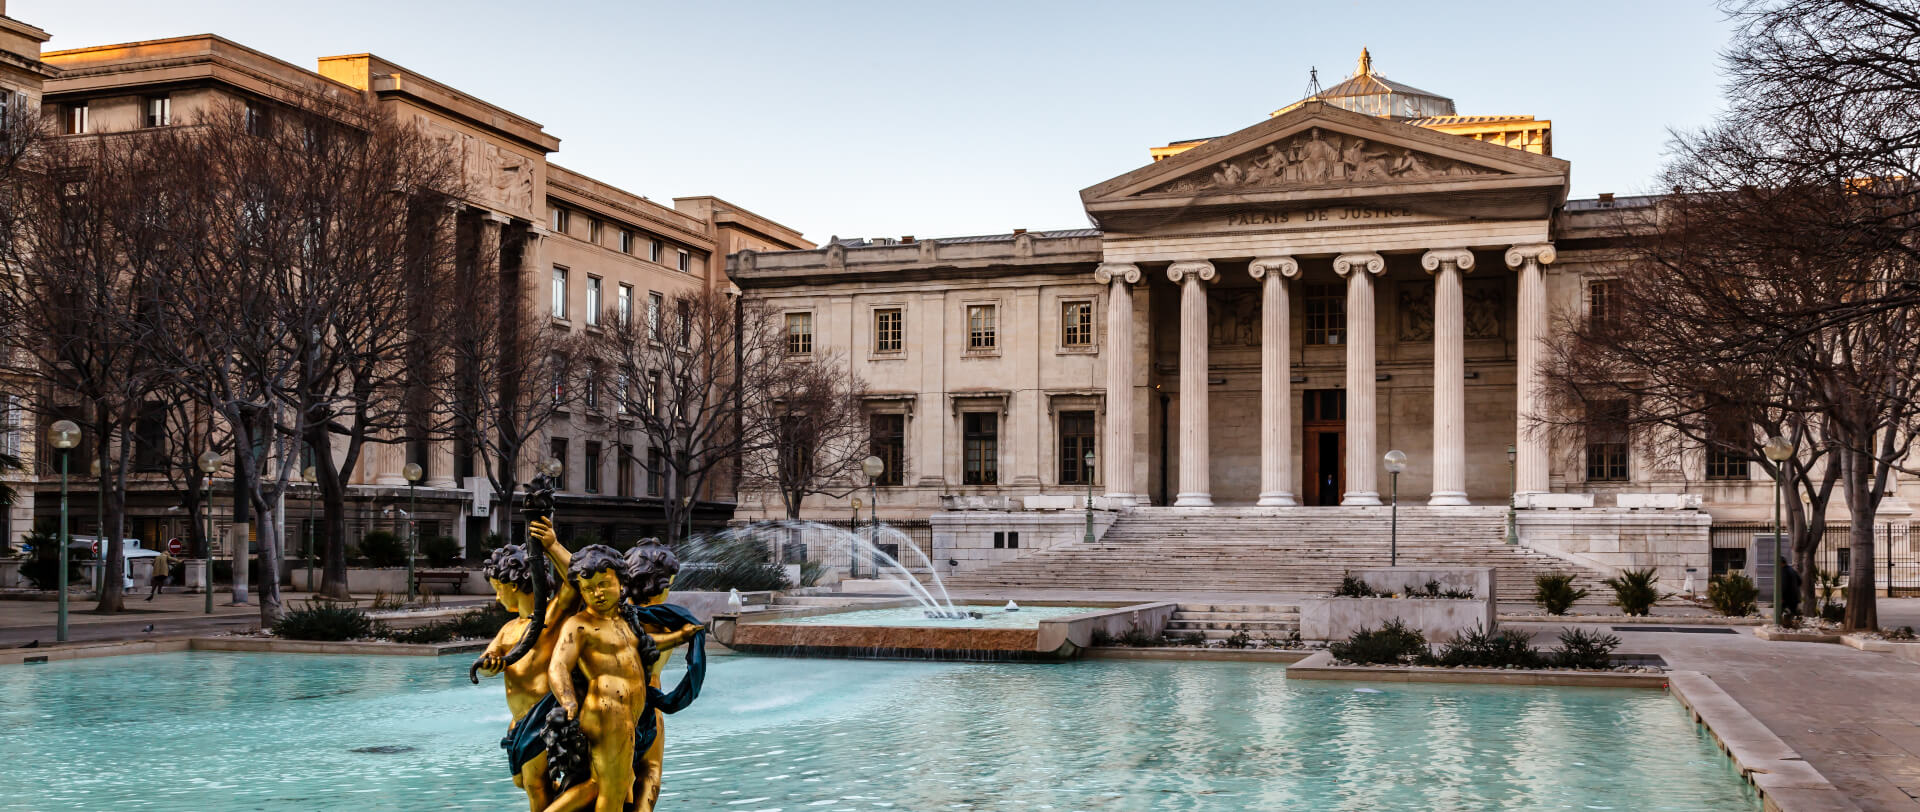 Photographie en couleur d'une perspective du bassin,du parvis et des colonnes de la porte du palais de justice de Marseille